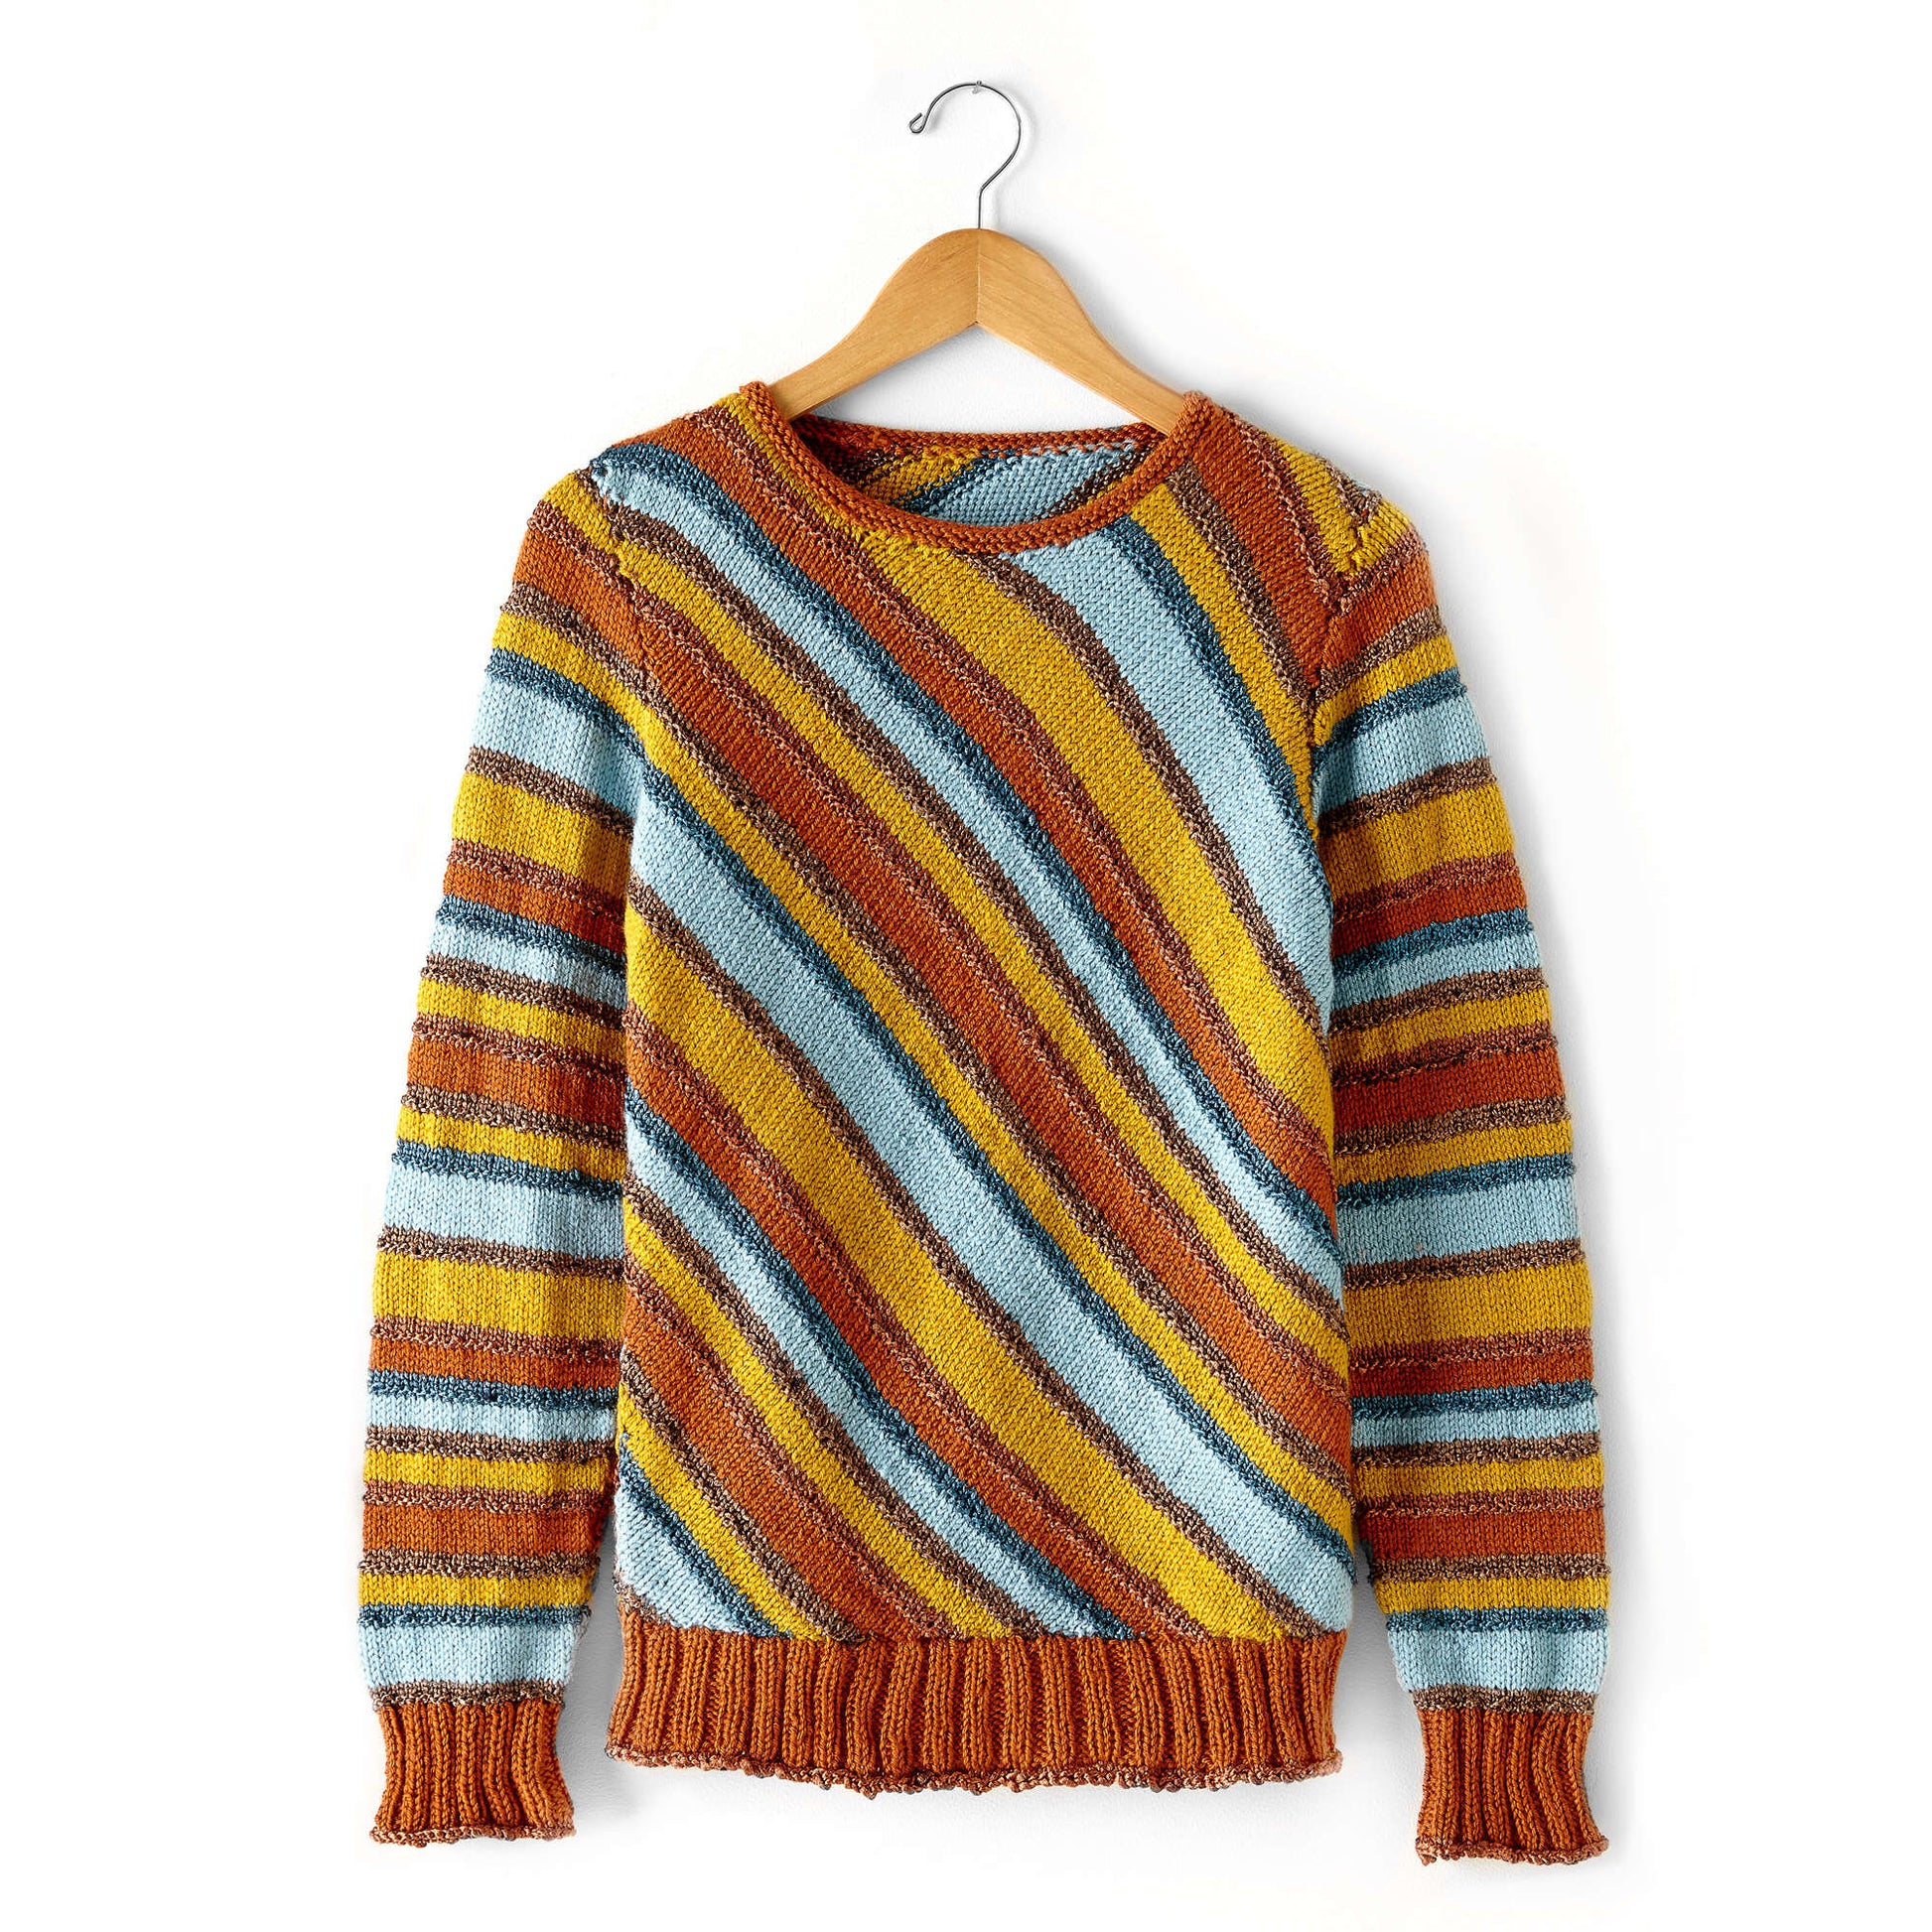 Free Patons Knit Diagonal Stripes Sweater Pattern